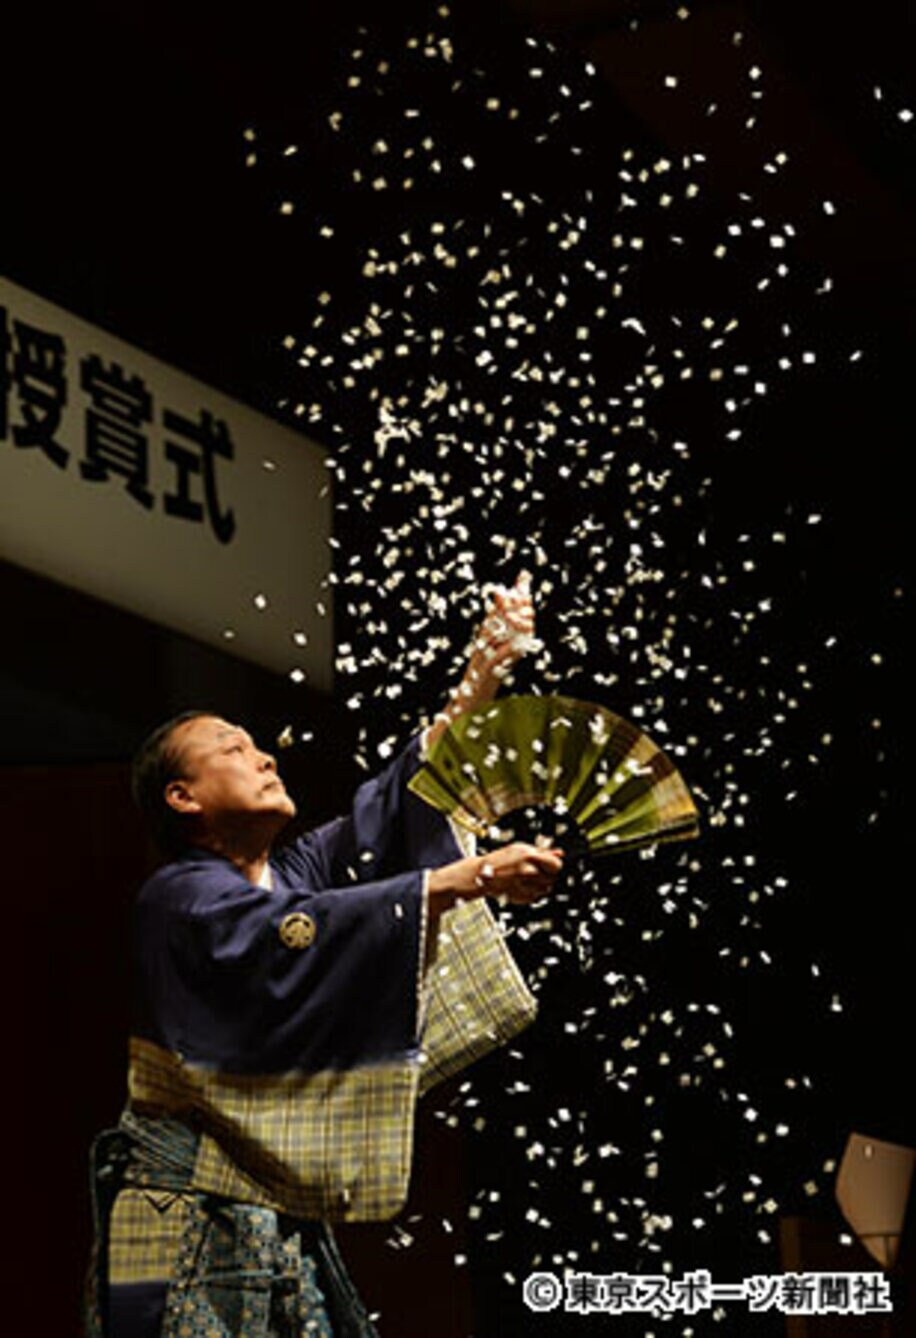 日本の伝統的な奇術「手妻（てづま）」の担い手・藤山新太郎